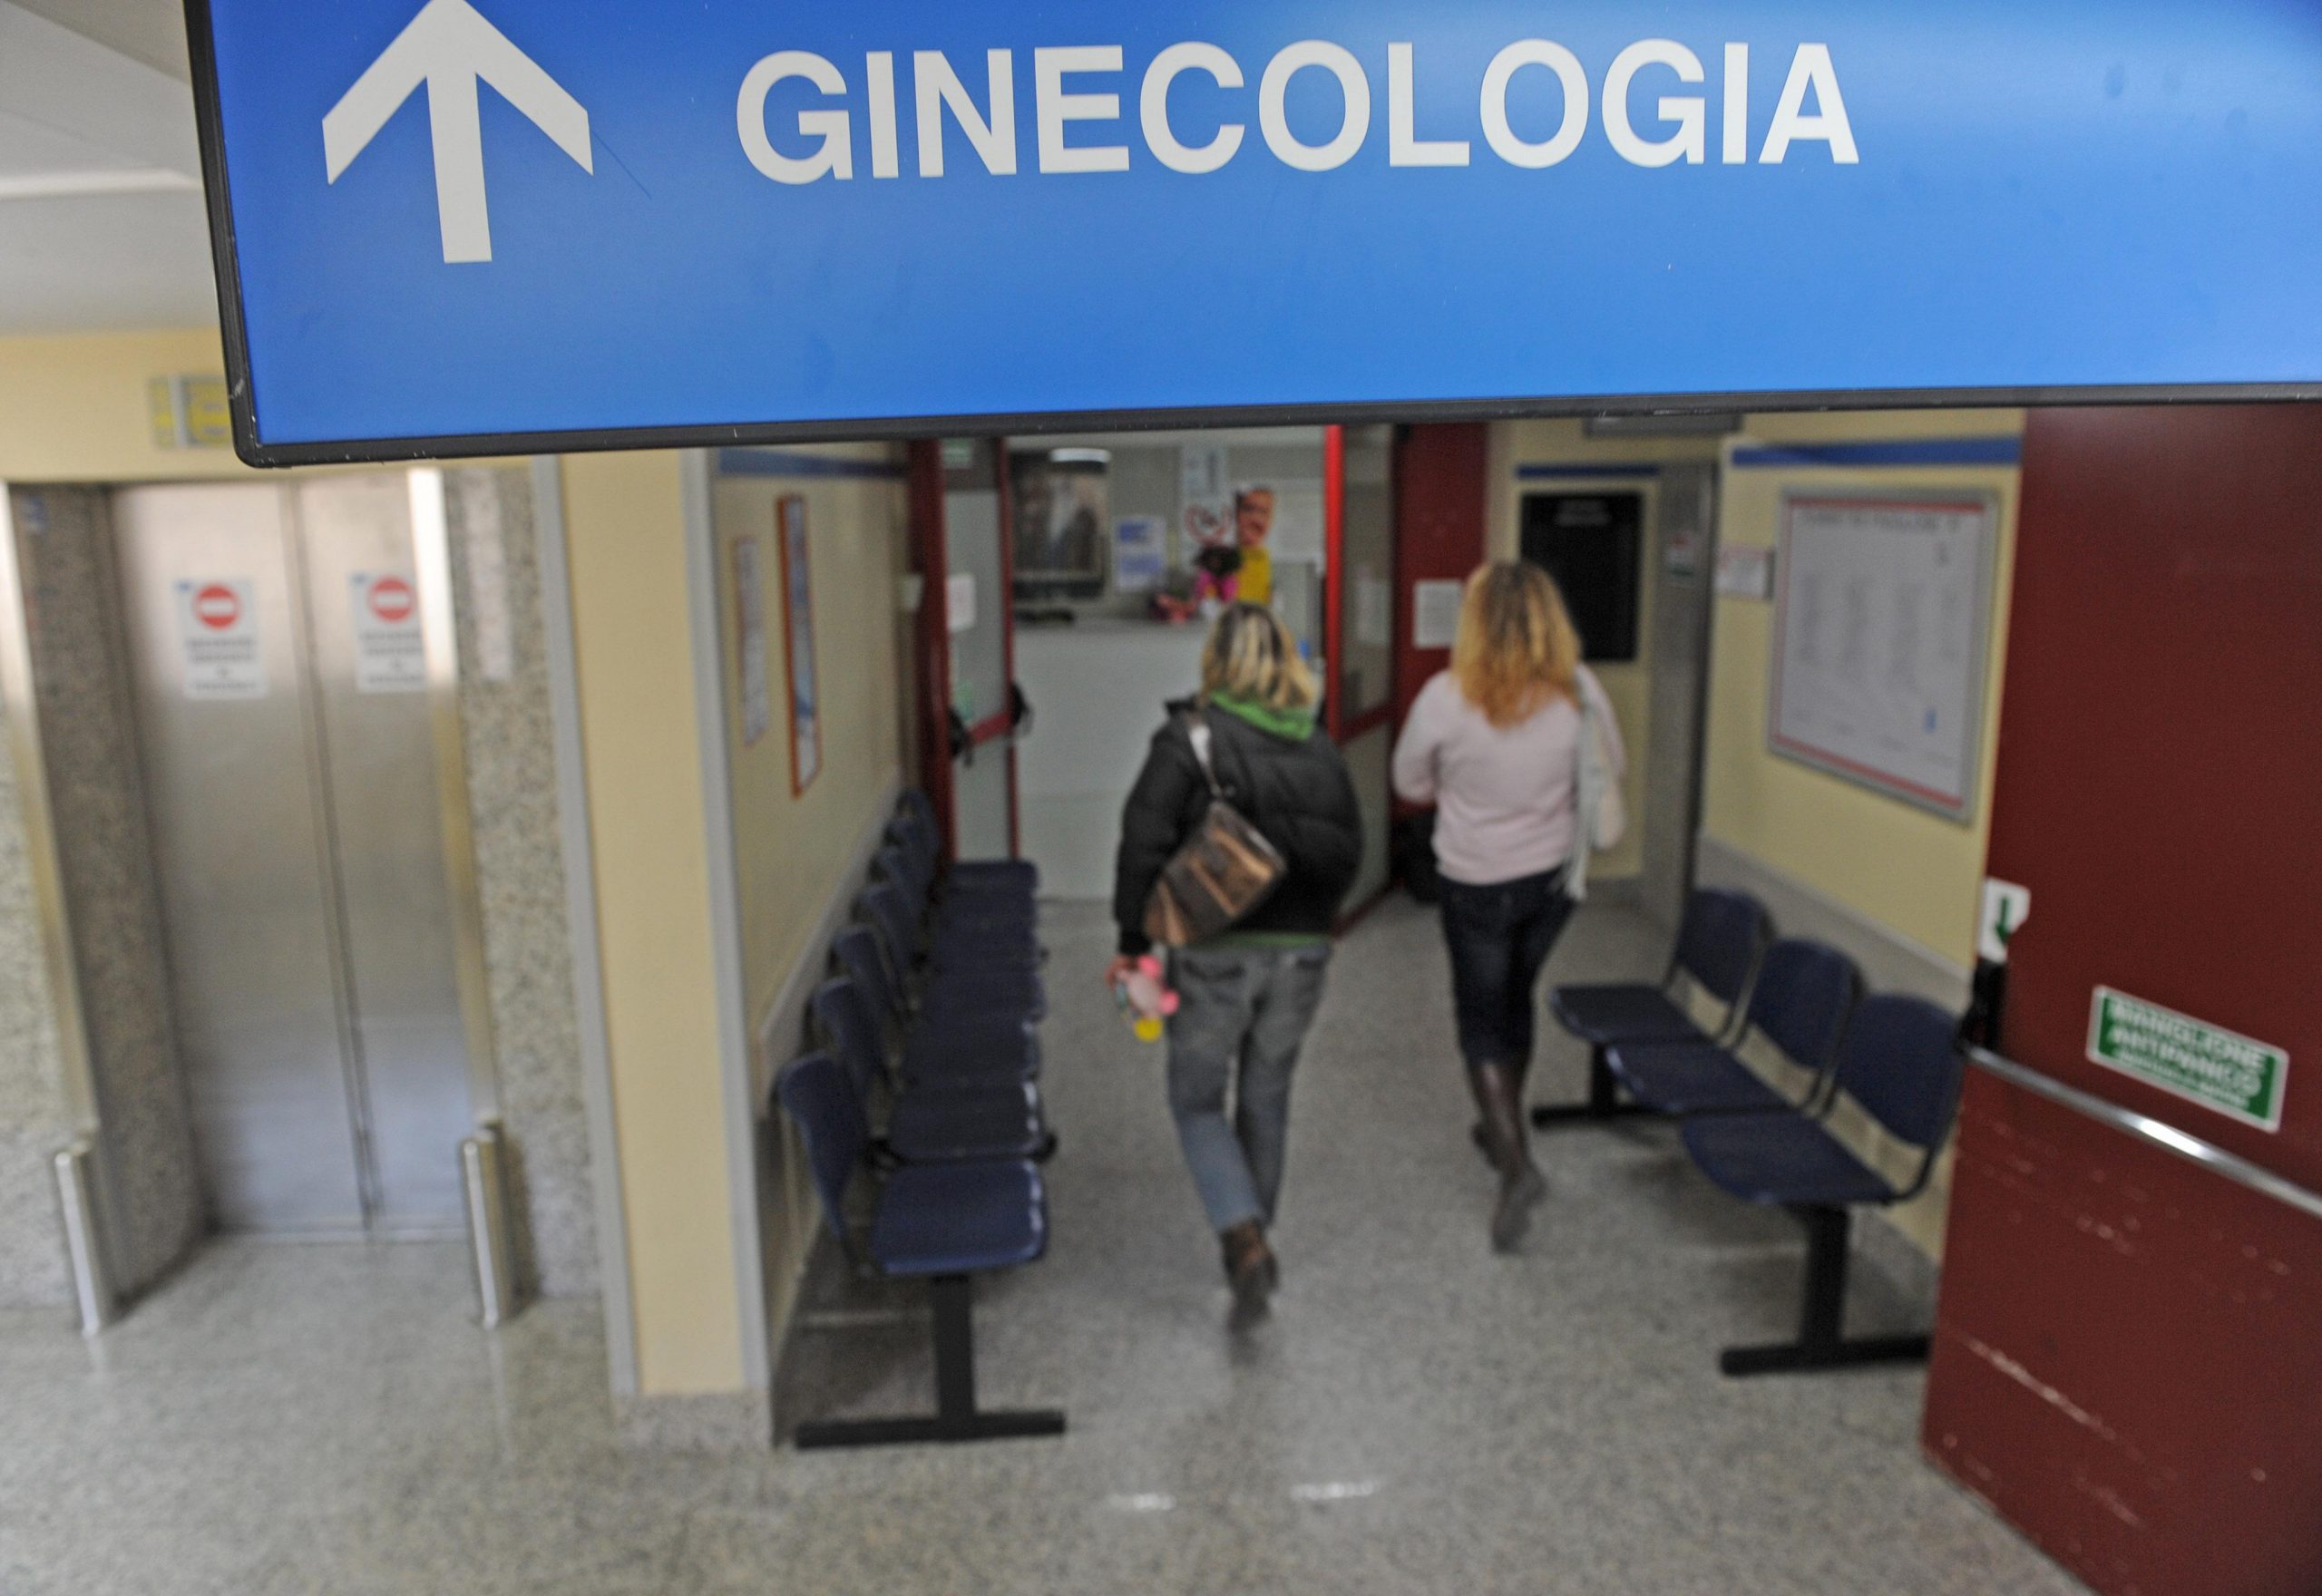 Milano, aborto non eseguito: donna disoccupata e malata chiede risarcimento danni e assegno di mantenimento all’ospedale